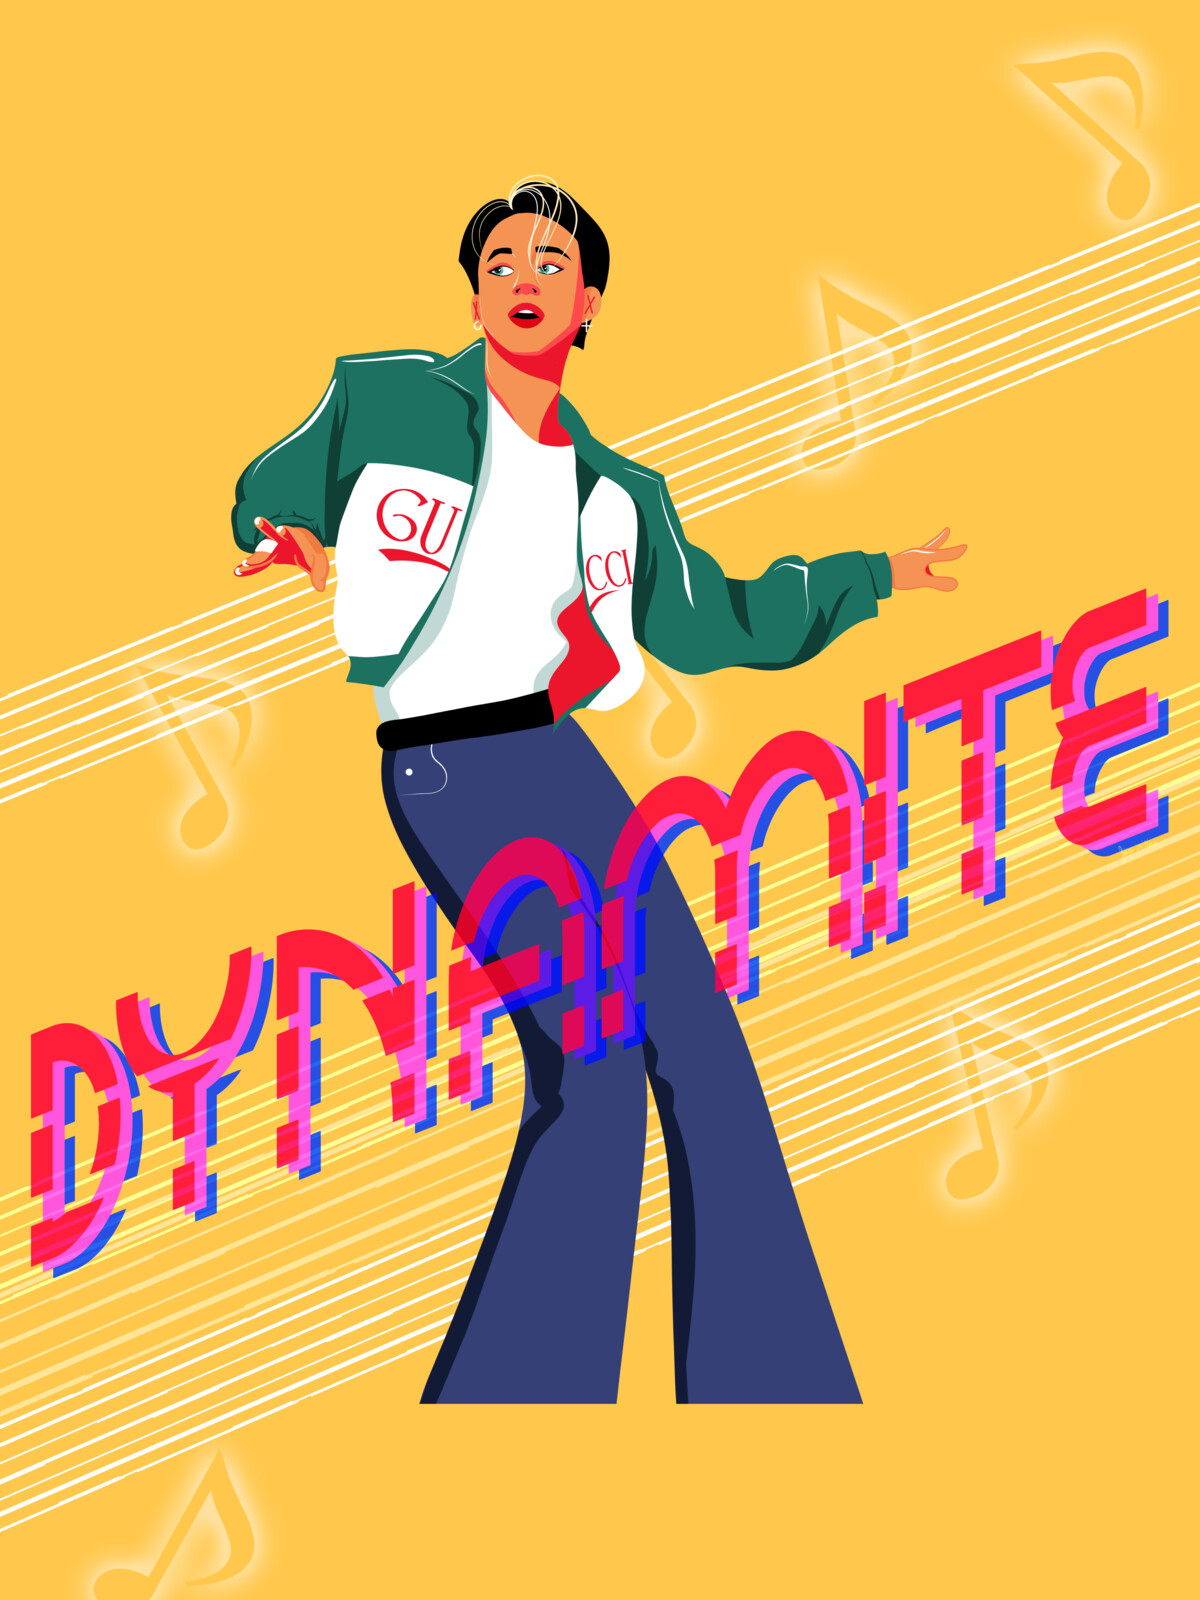 dddynamite